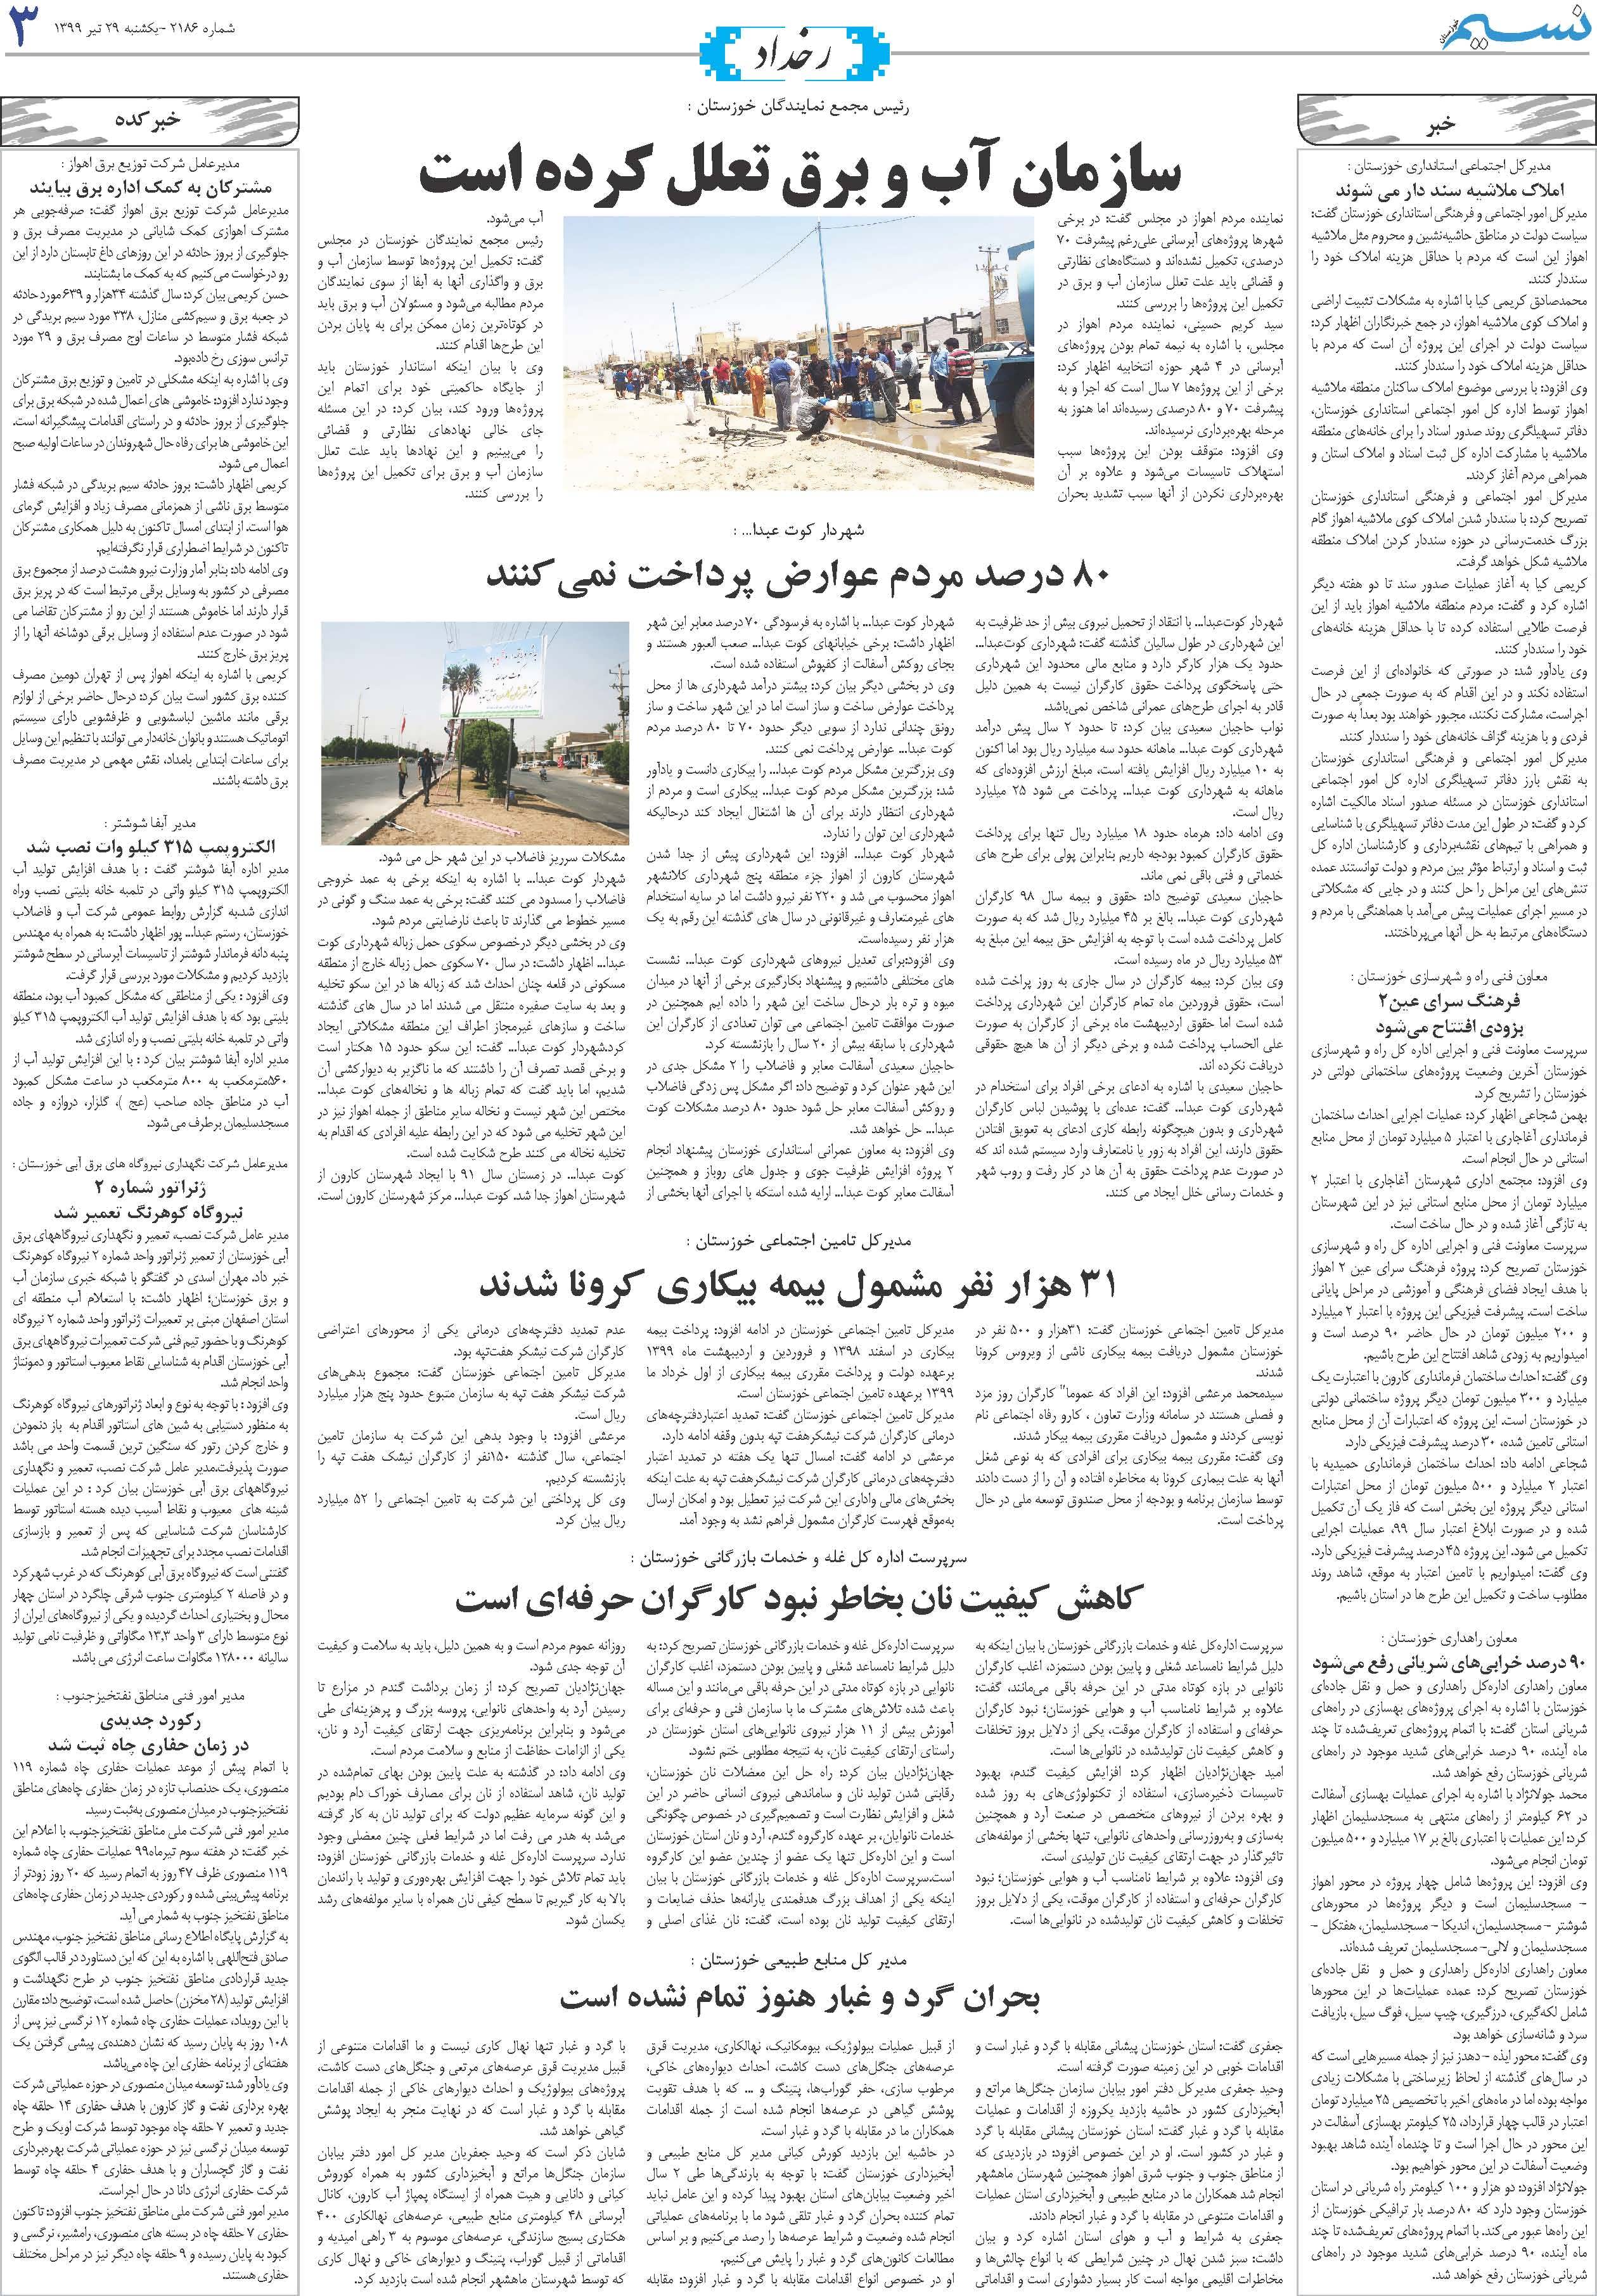 صفحه رخداد روزنامه نسیم شماره 2186